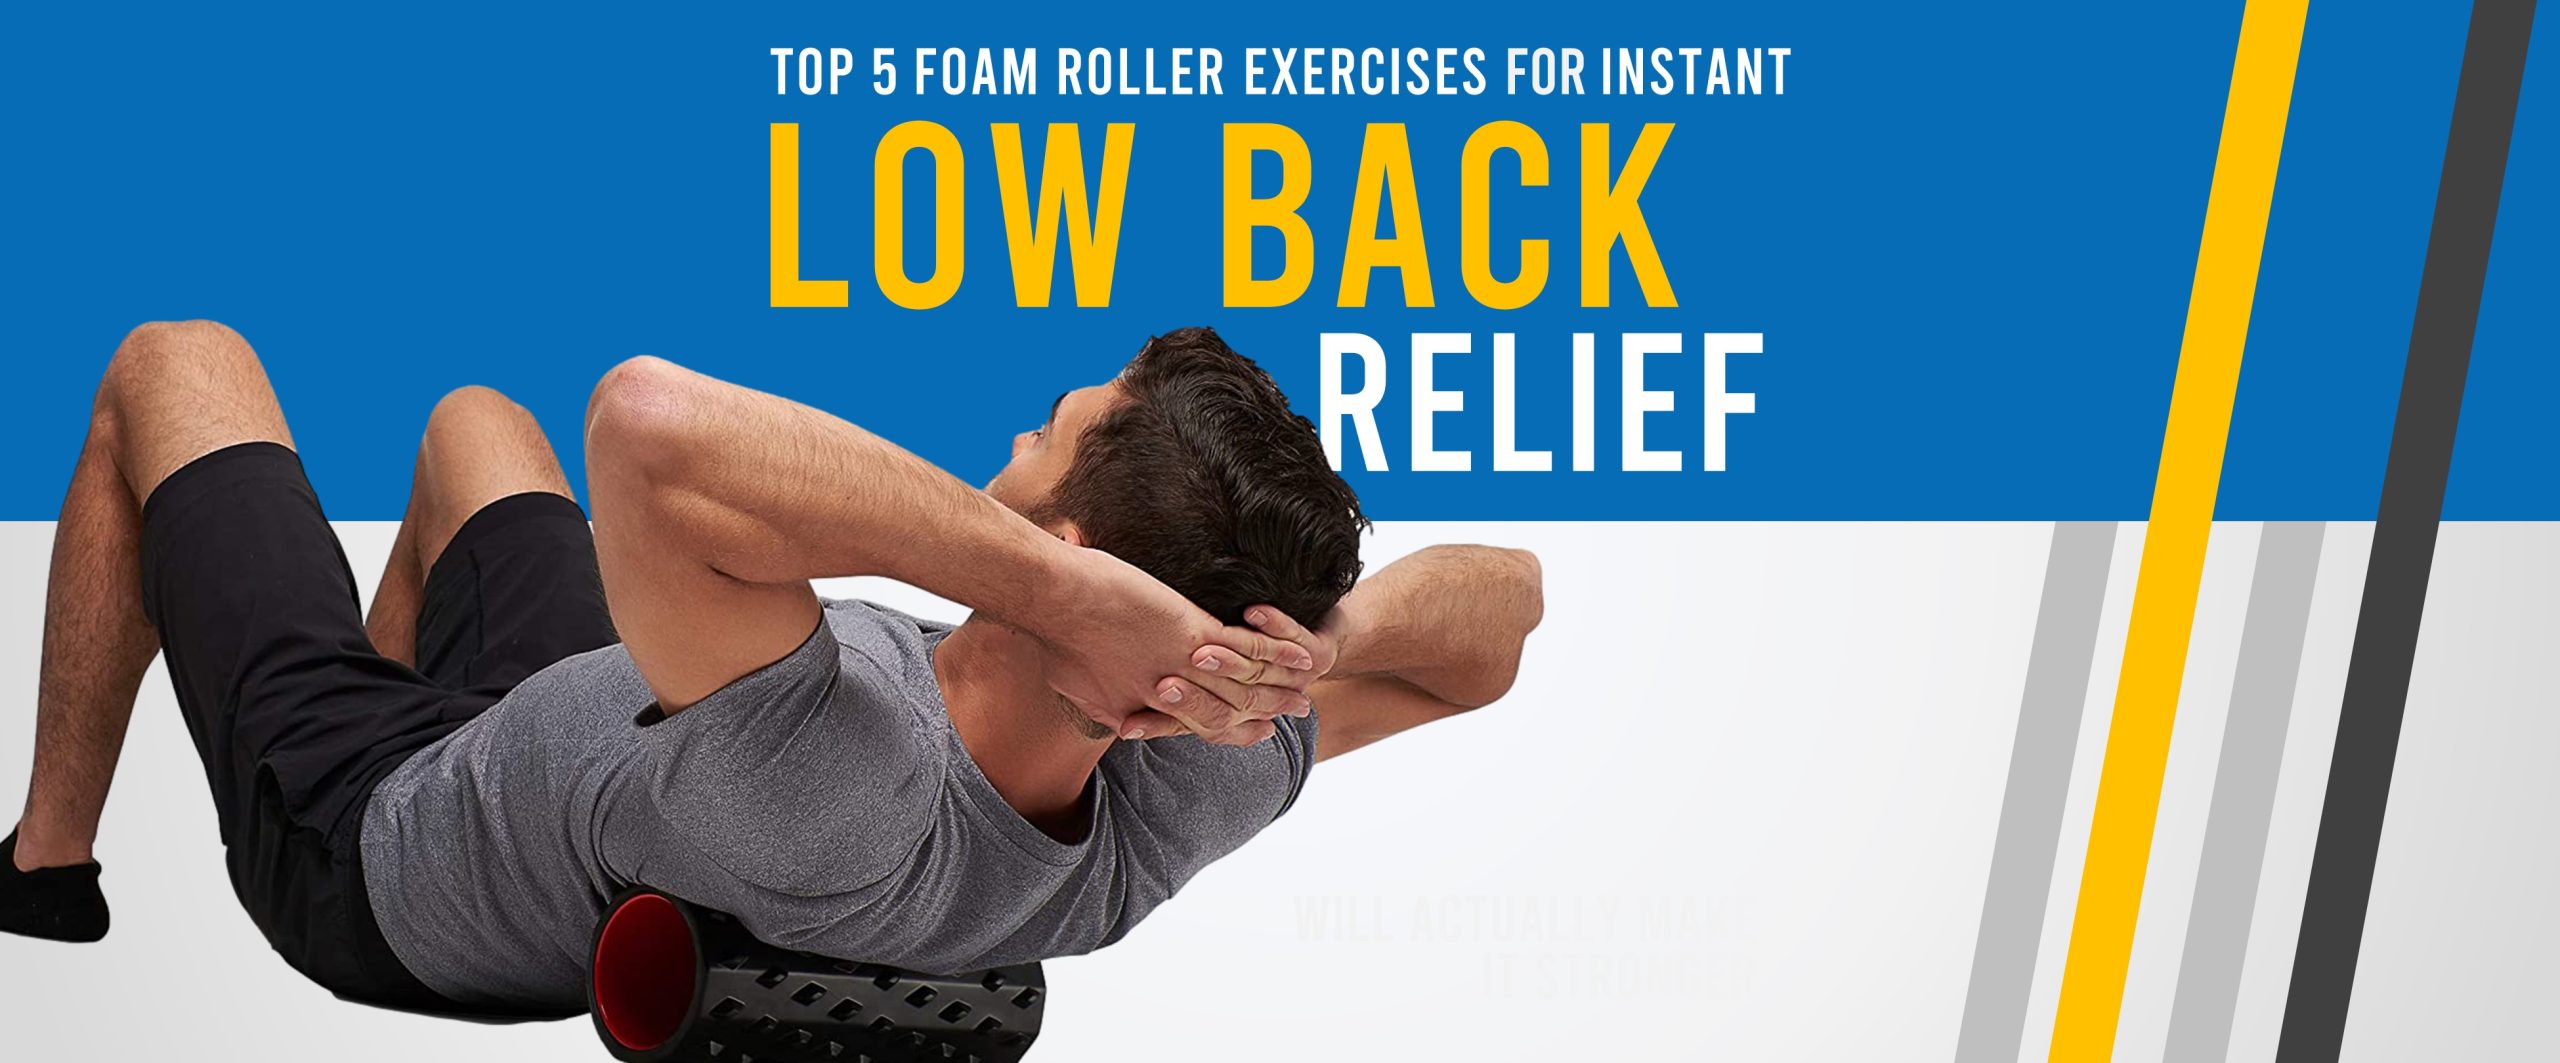 The 5 Best Foam Roller Back Exercises